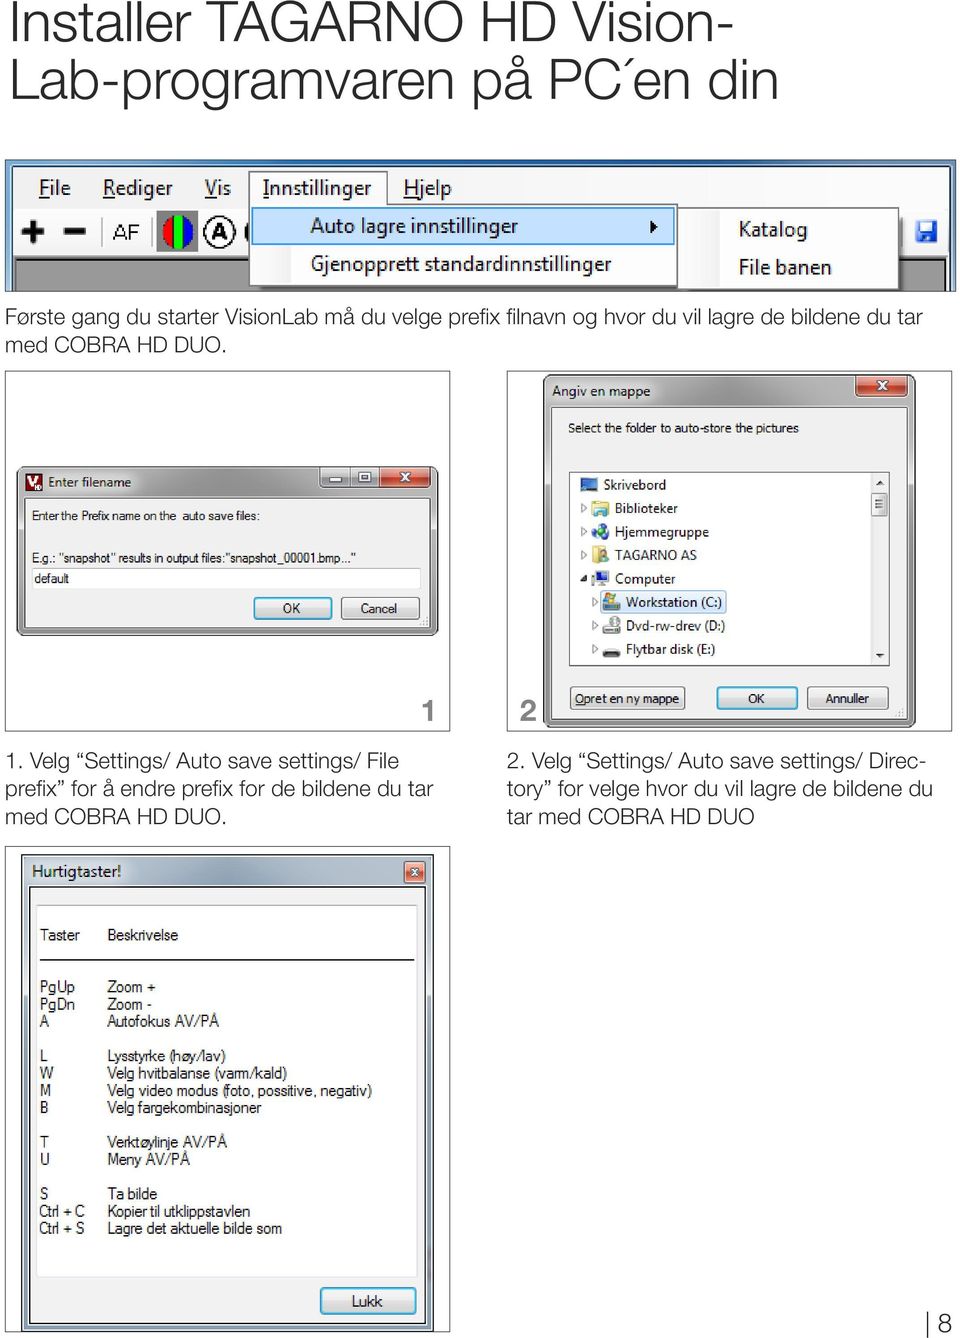 Velg Settings/ uto save settings/ File prefix for å endre prefix for de bildene du tar med COBR HD